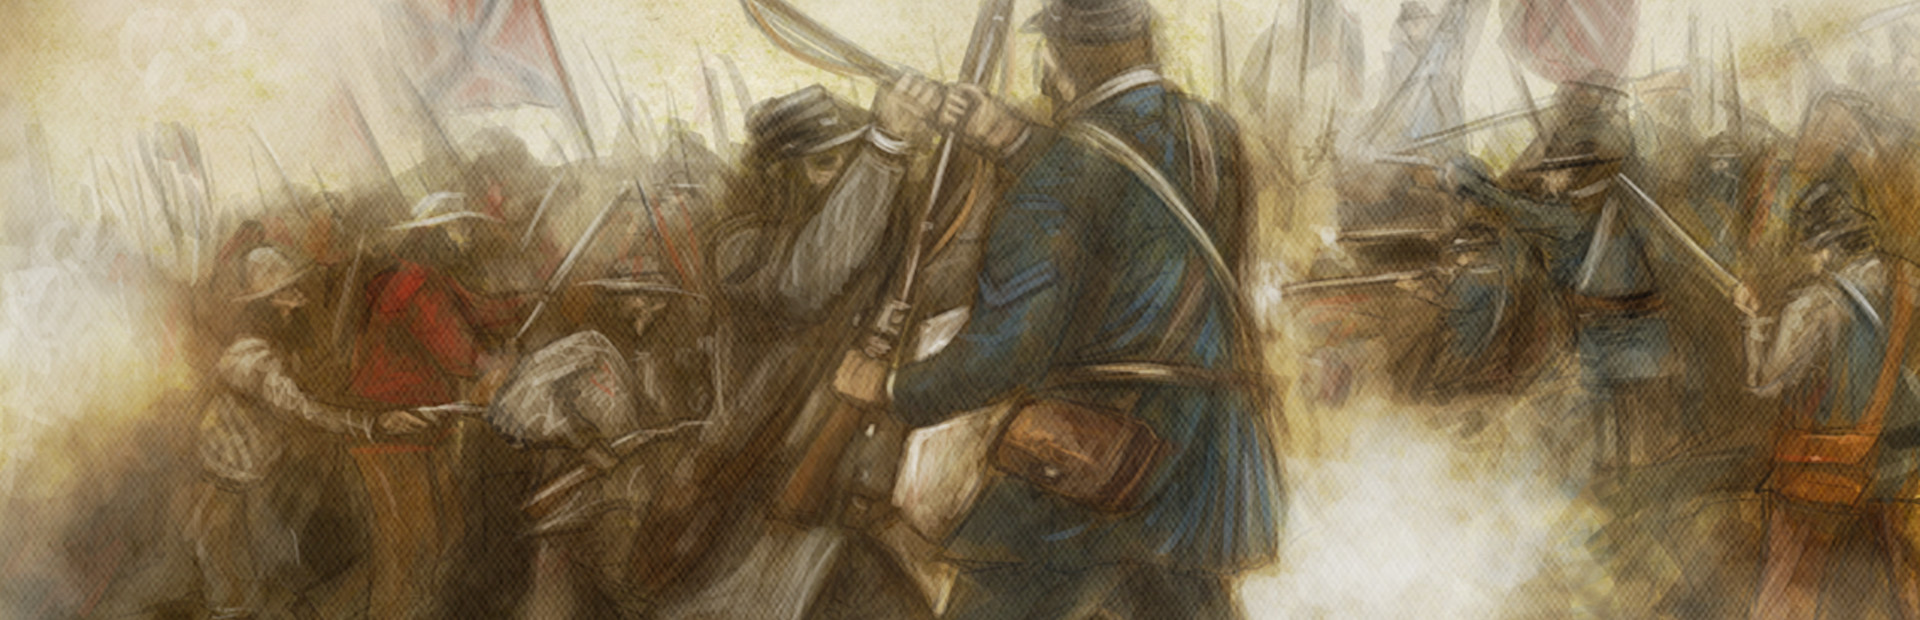 Civil War: 1861 cover image